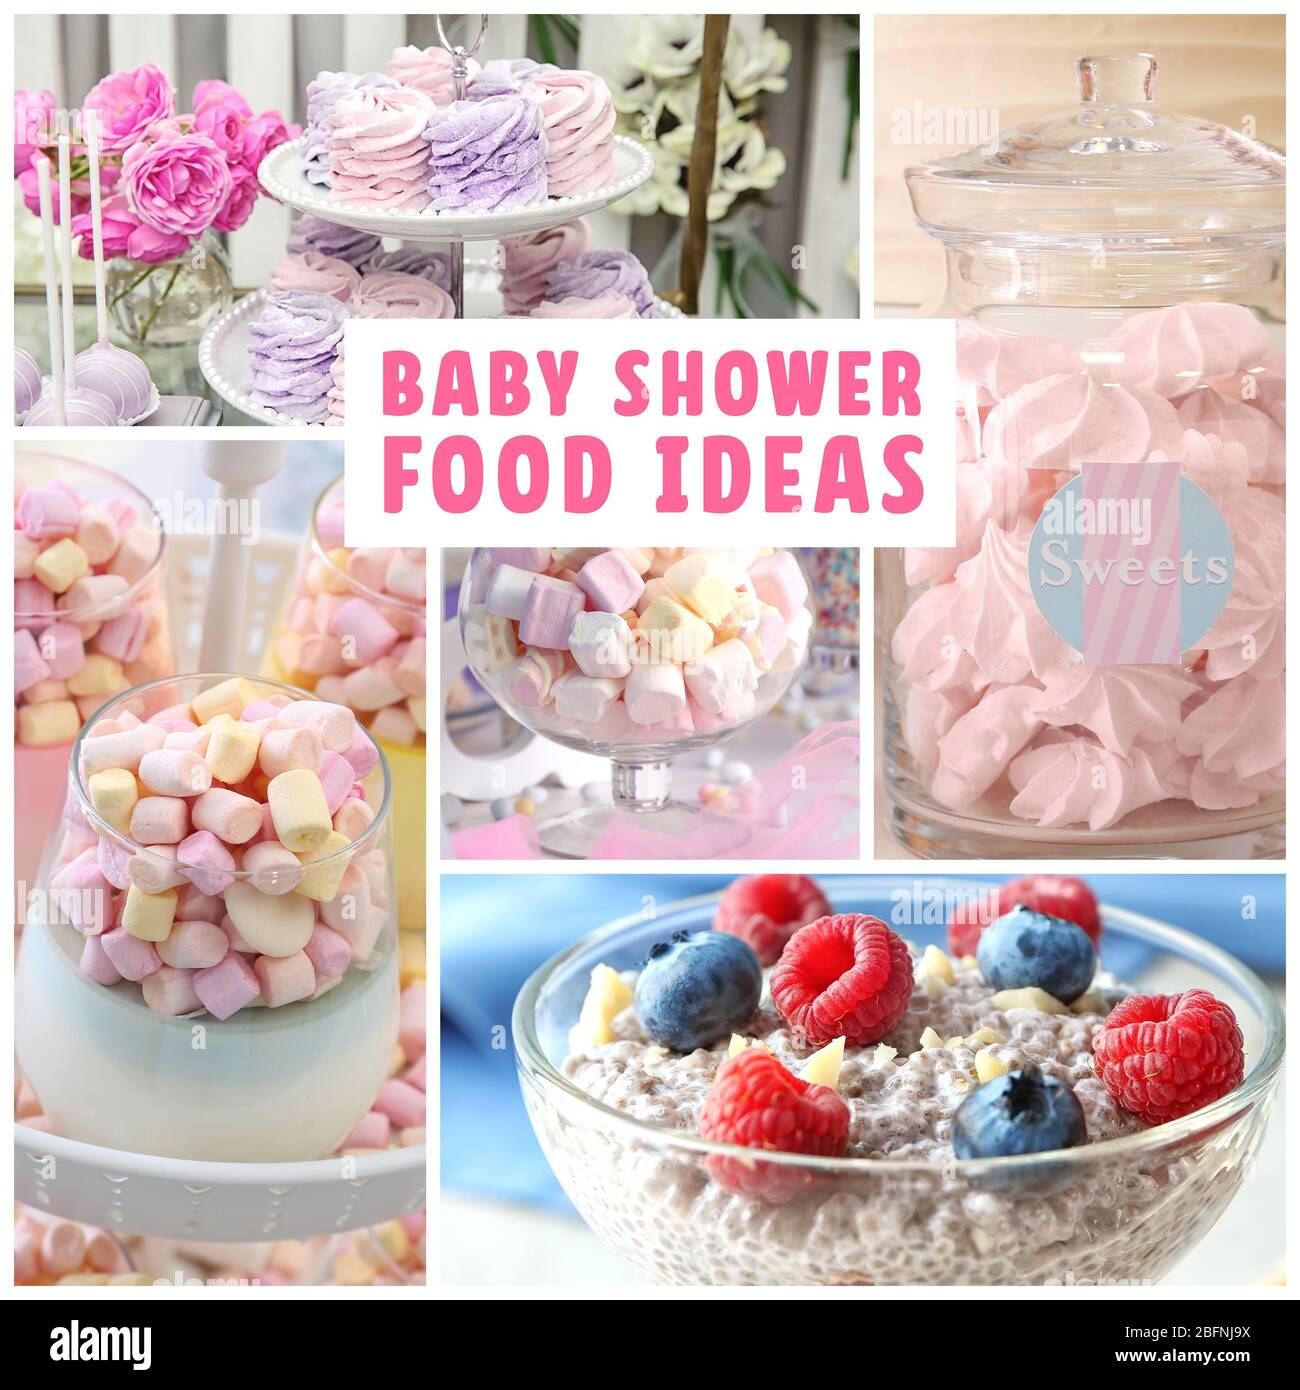 Ideas para decorar Baby shower de niña 👶🏻Ideas to decorate Baby